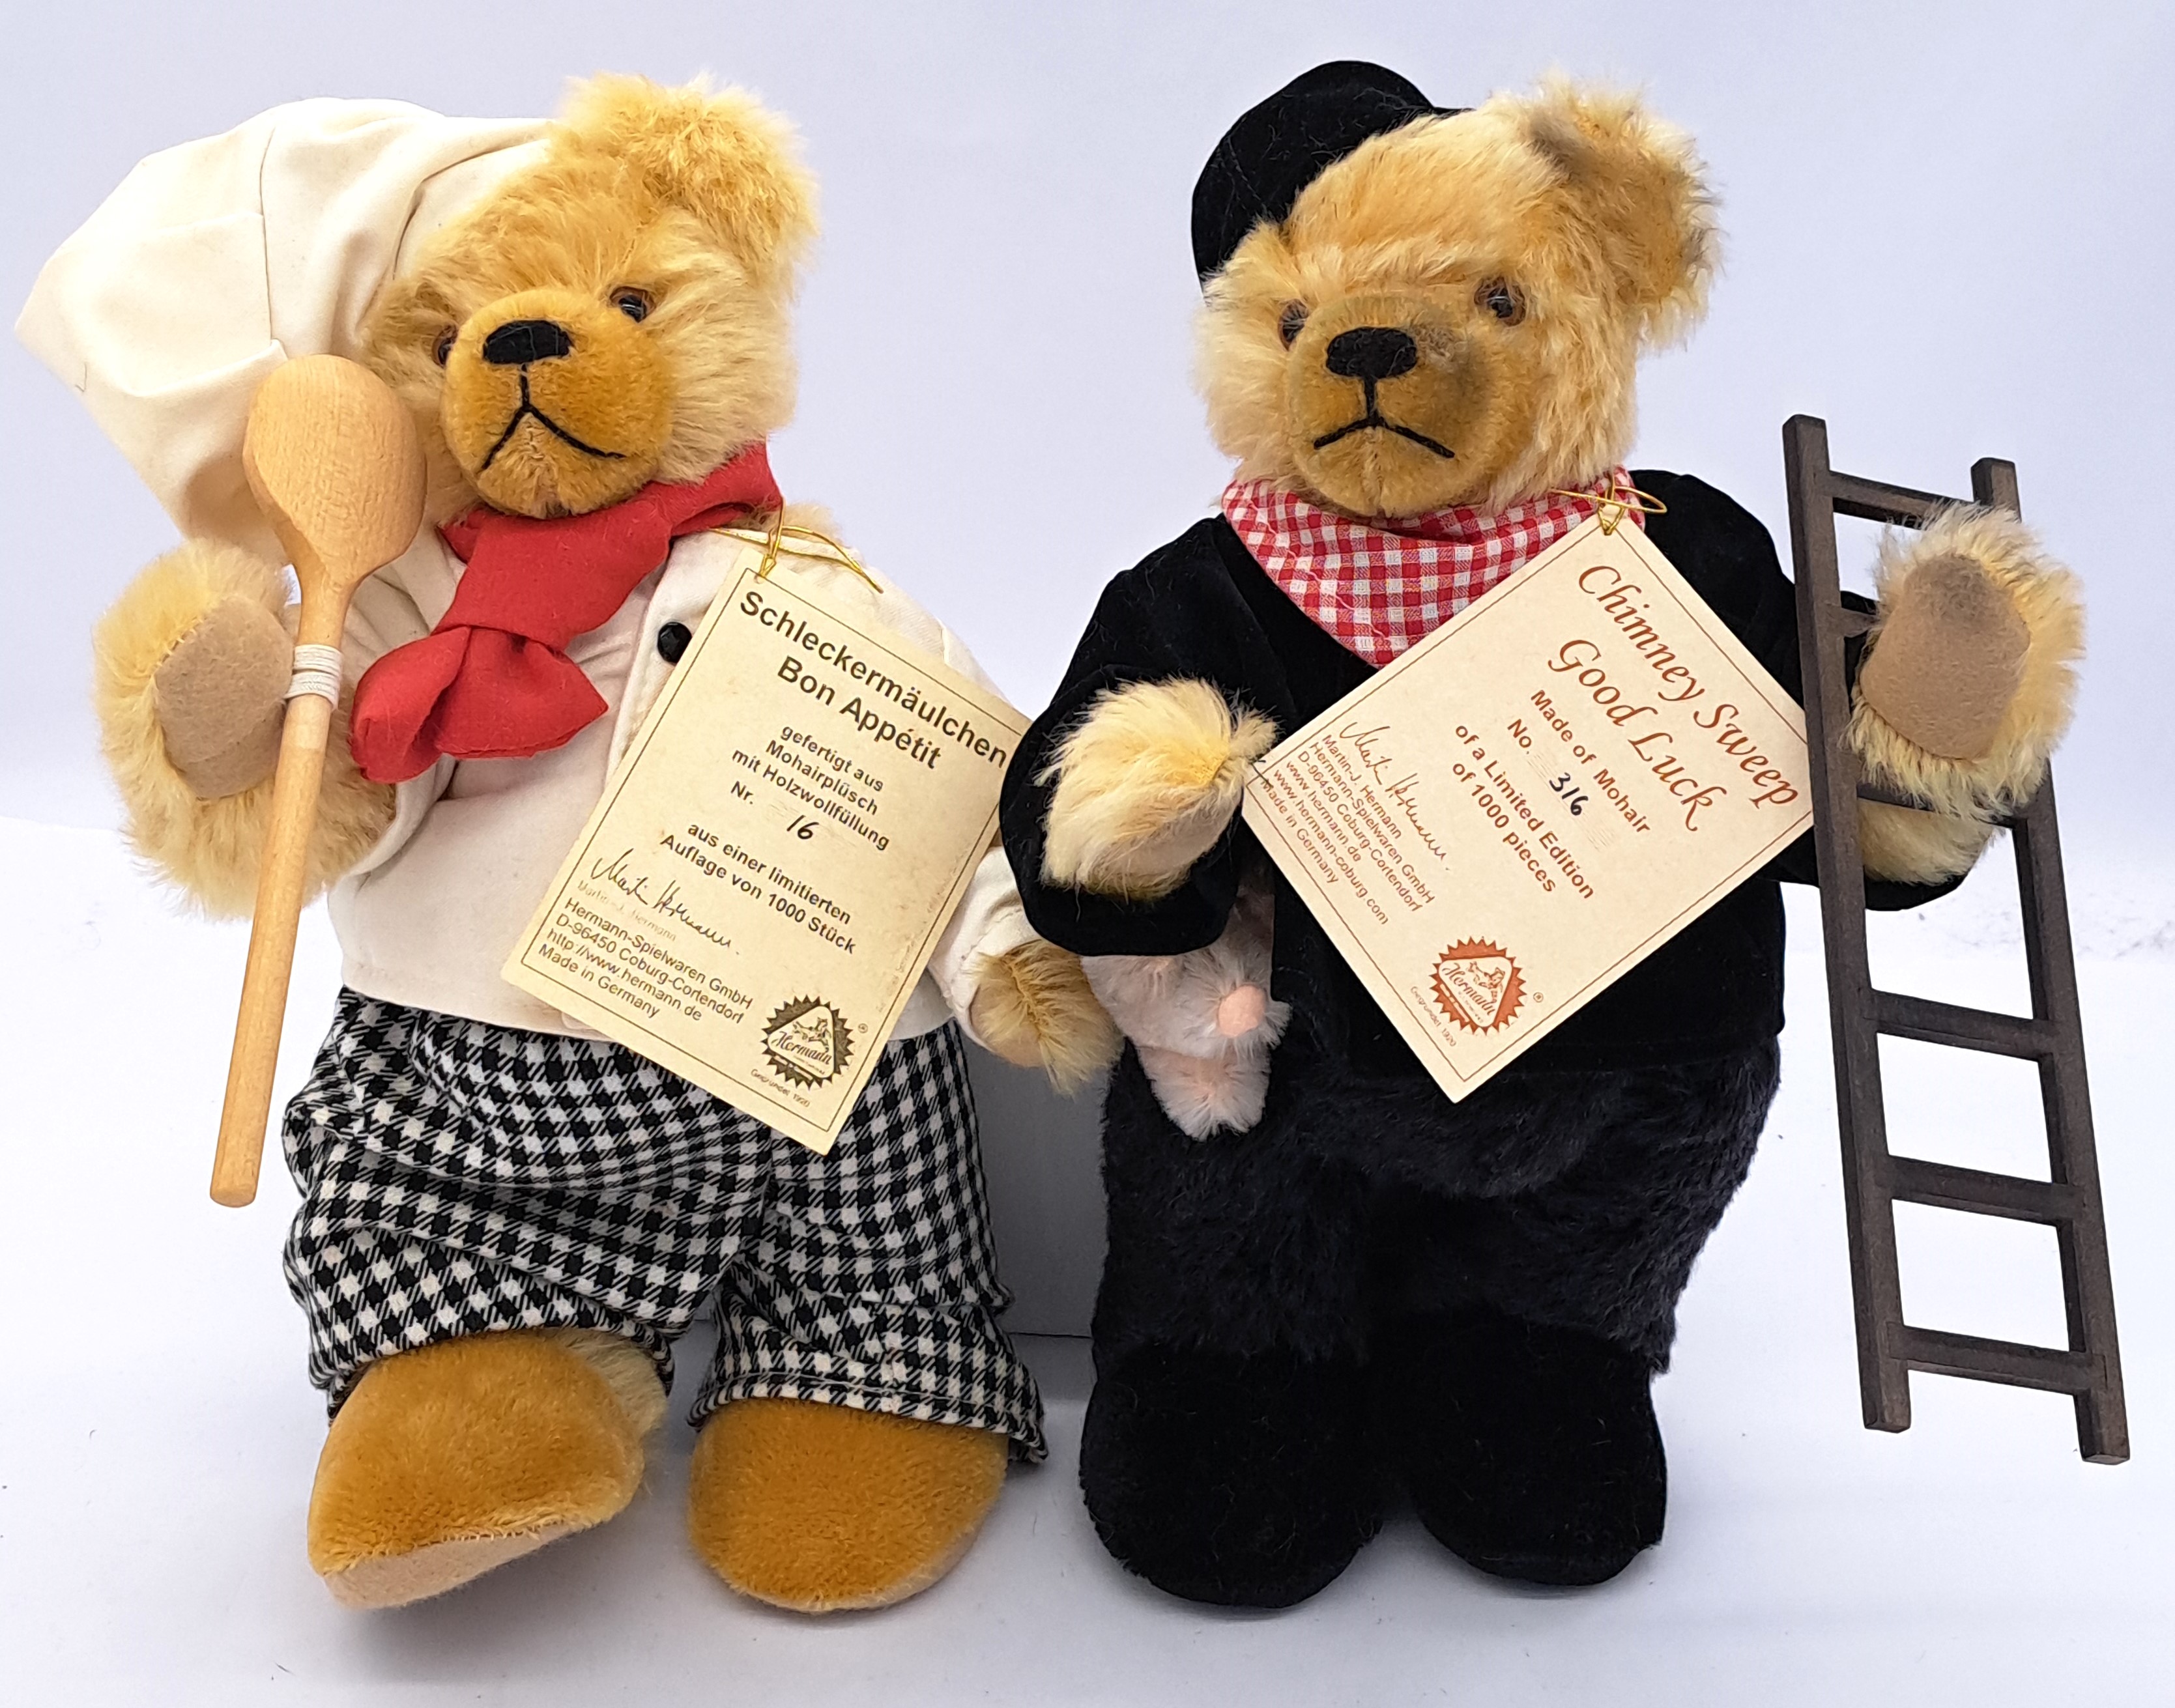 Hermann-Spielwaren pair of teddy bears